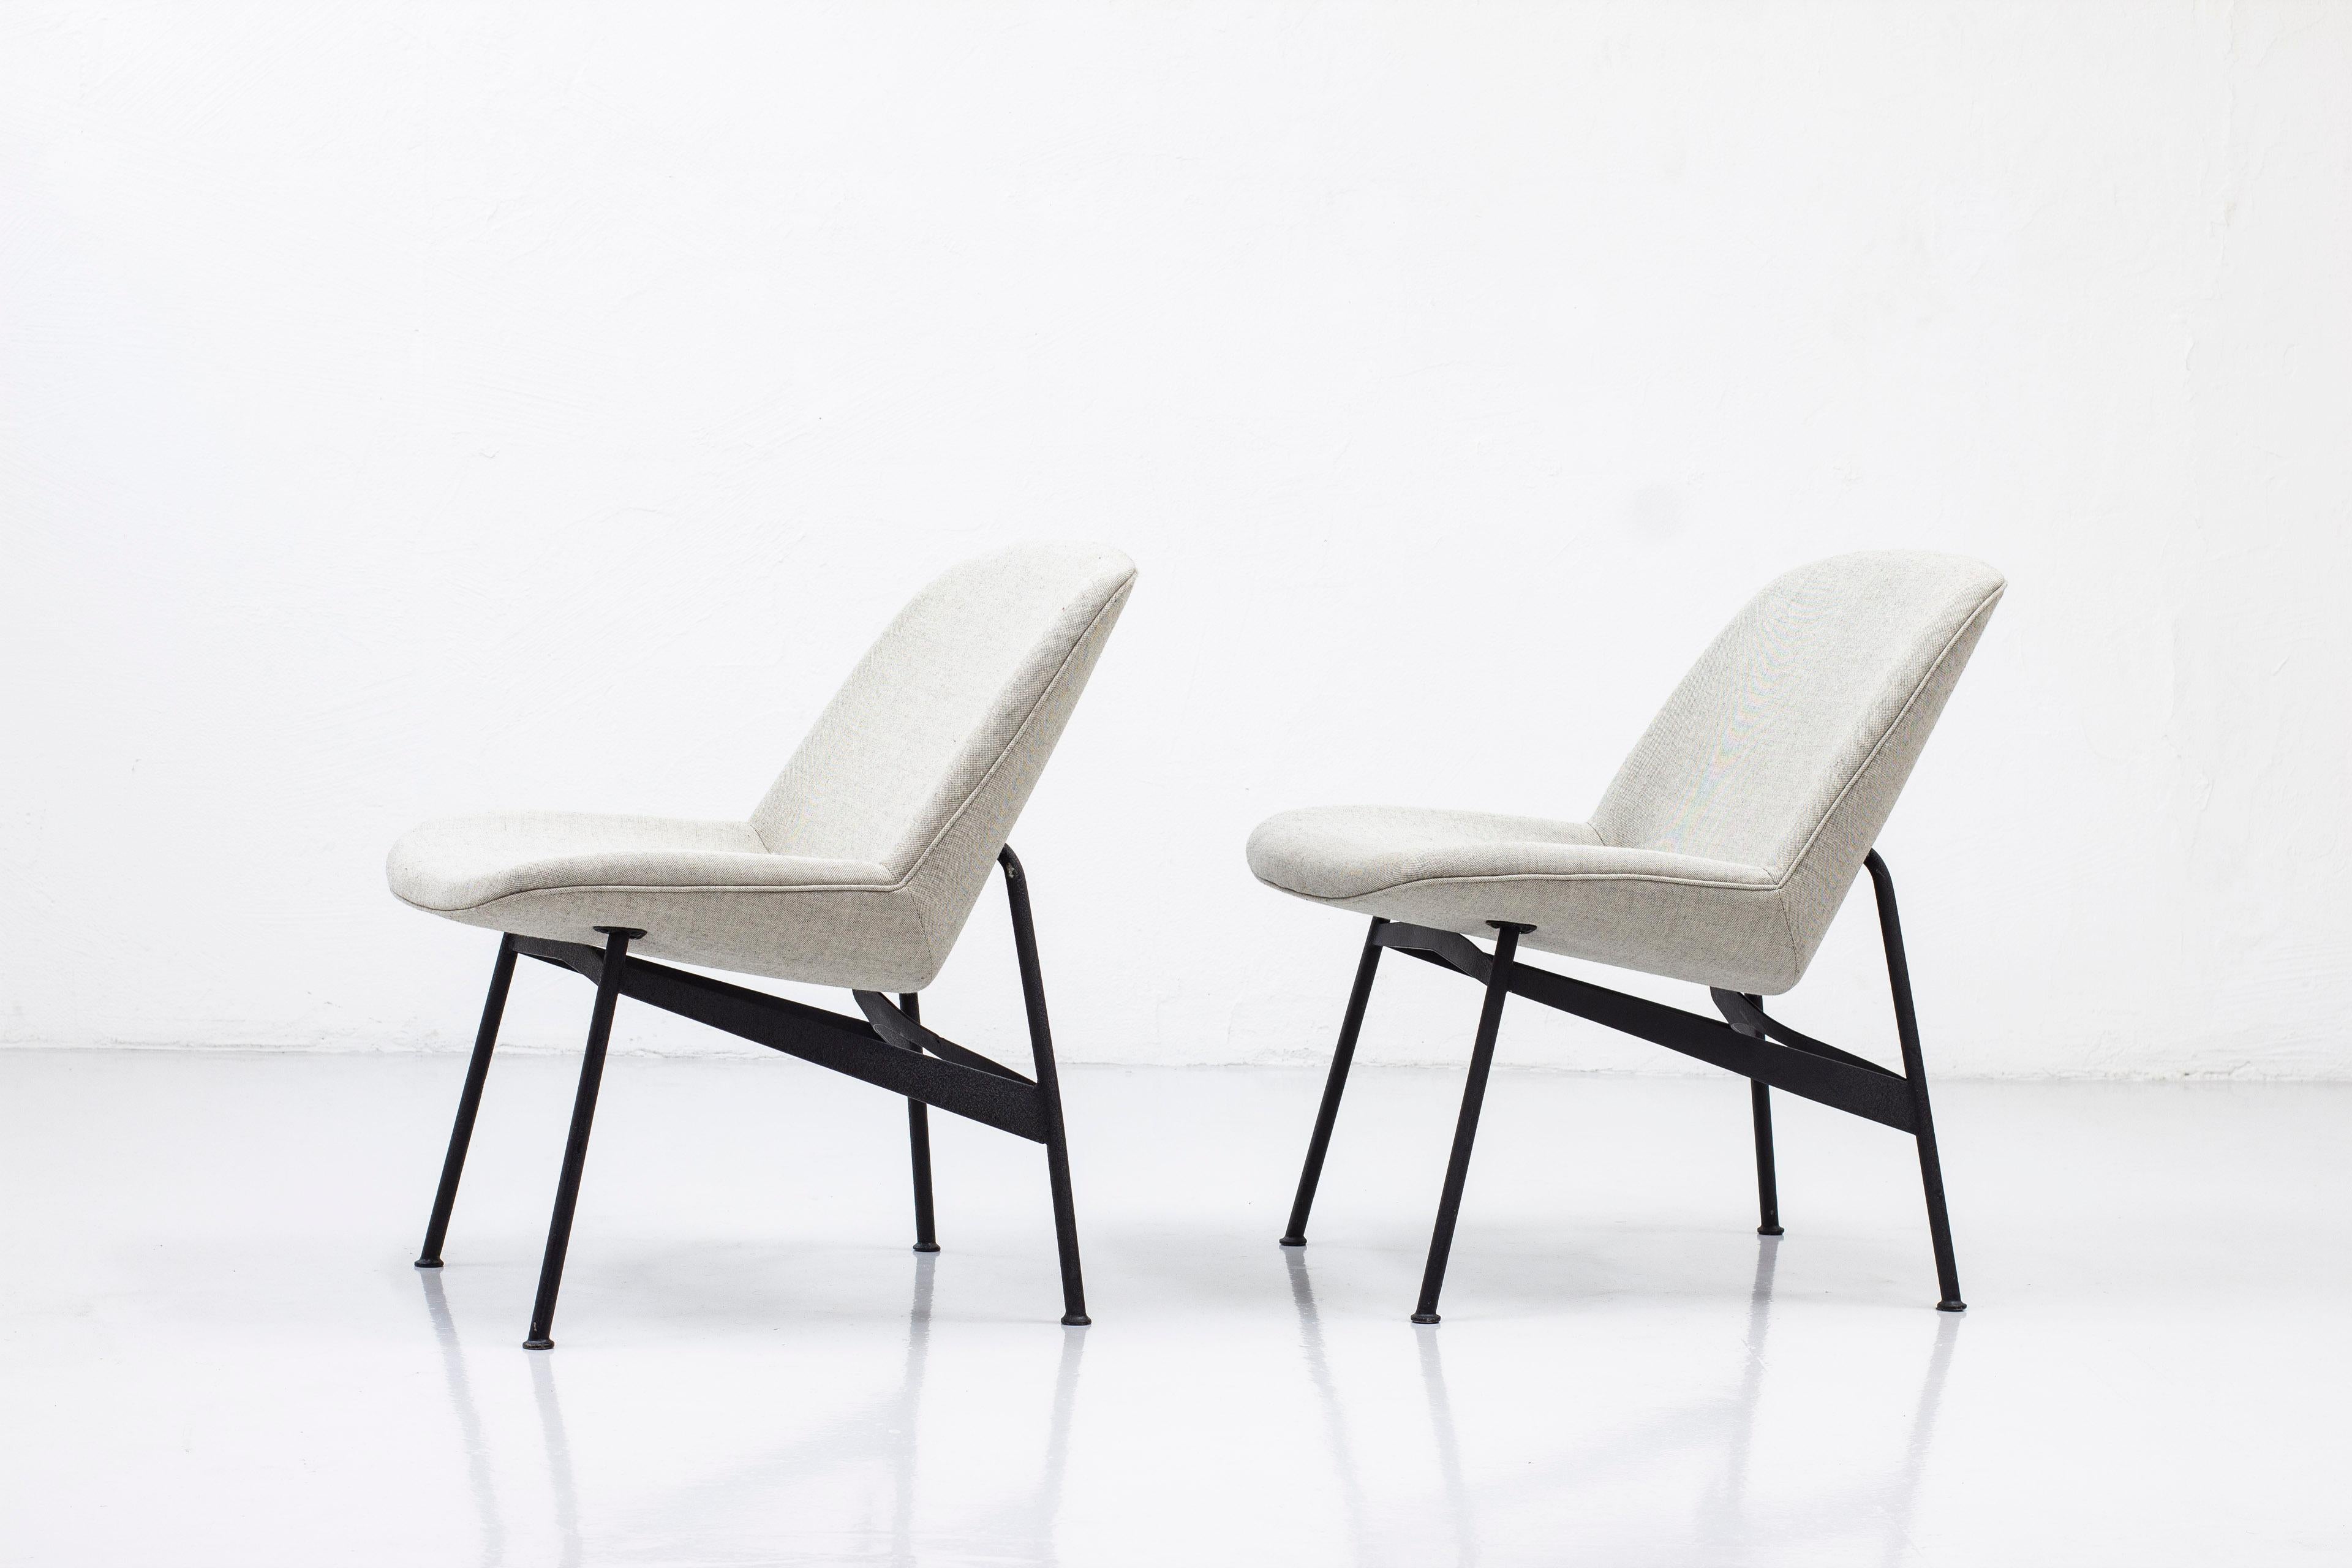 Chaises longues rares conçues par Hans Harald Molander. Produit par Nordiska Kompaniet dans les années 1950. Fabriqué en acier laqué noir et sièges rembourrés. Rembourré avec un tissu en laine de Kvadrat textiles dans un mélange de gris clair. Très